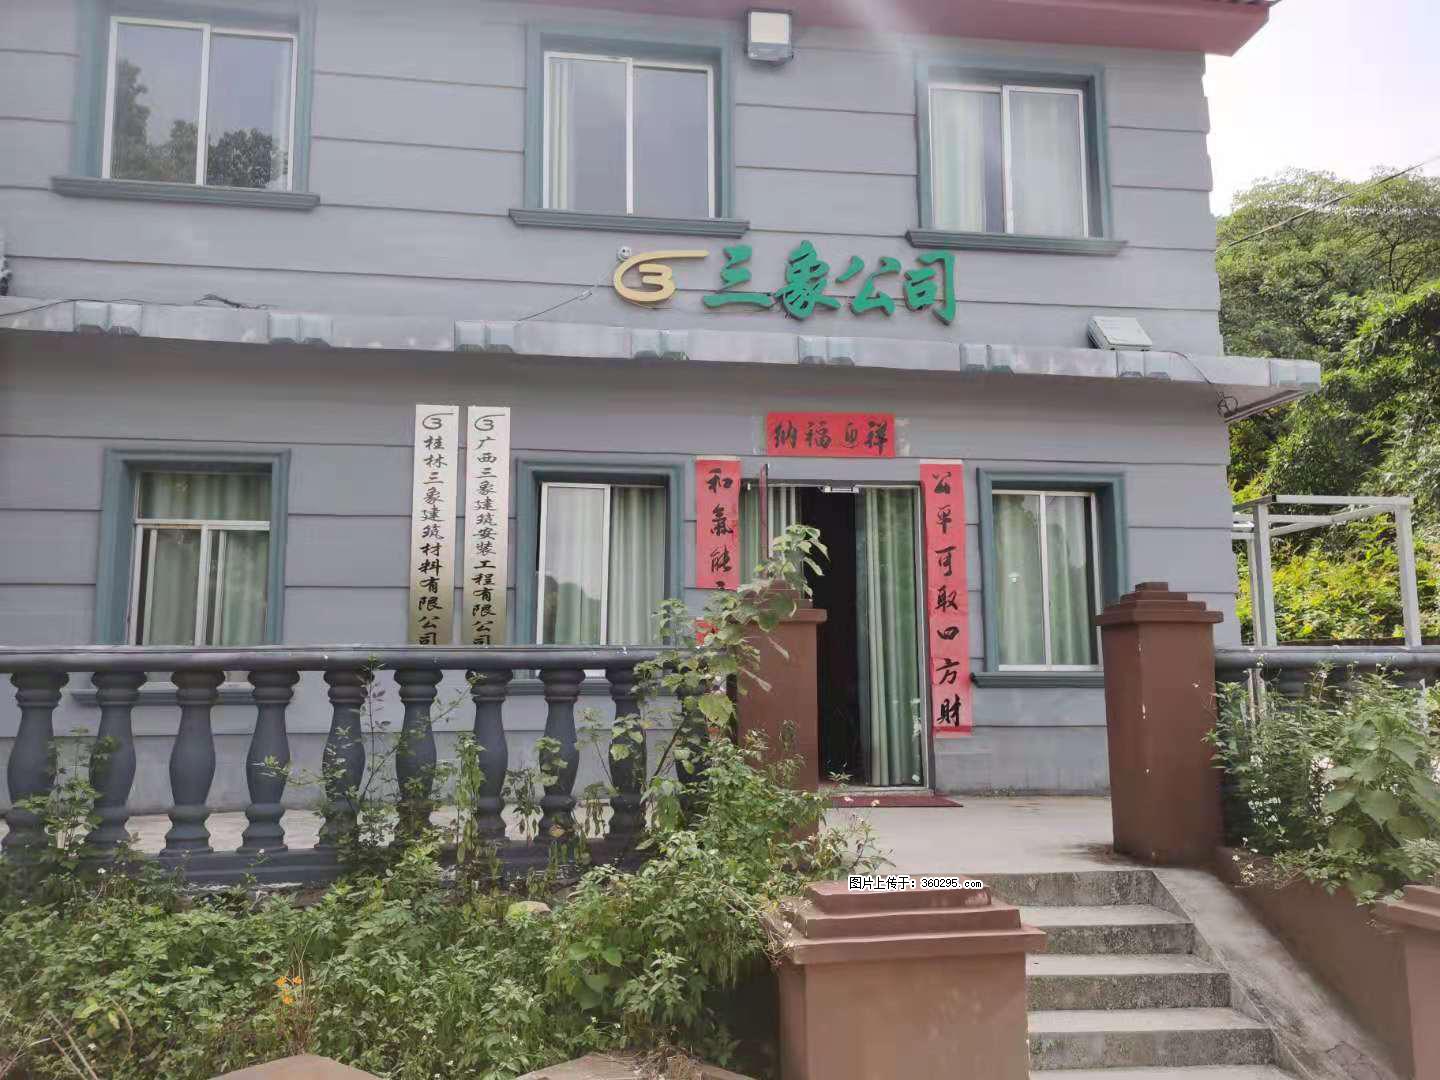 三象公司厂部办公楼(11) - 凉山三象EPS建材 liangshan.sx311.cc